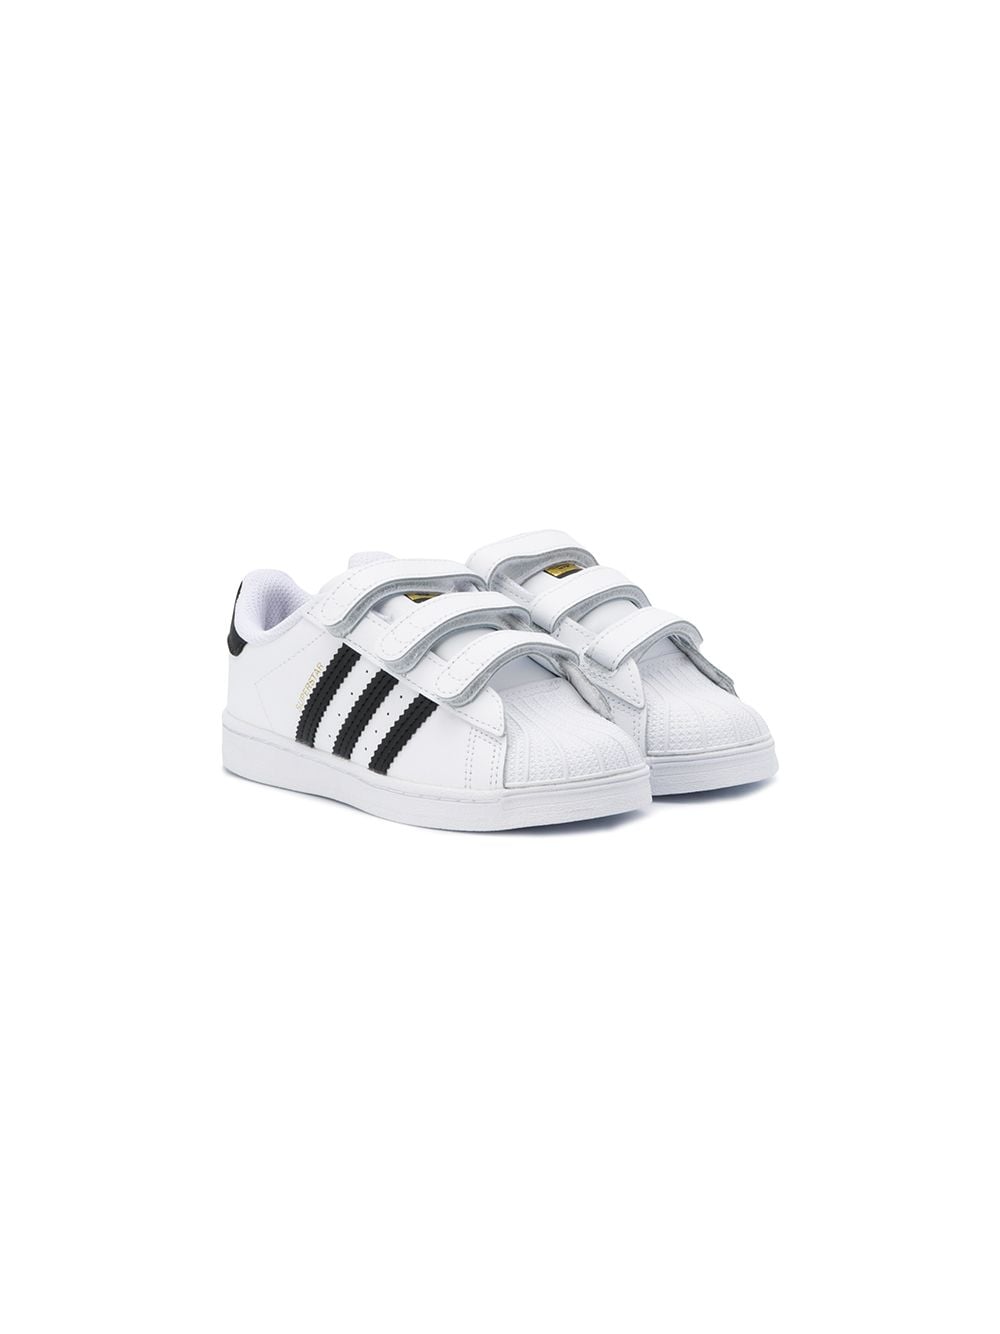 adidas Kids Superstar touch strap sneakers - White von adidas Kids